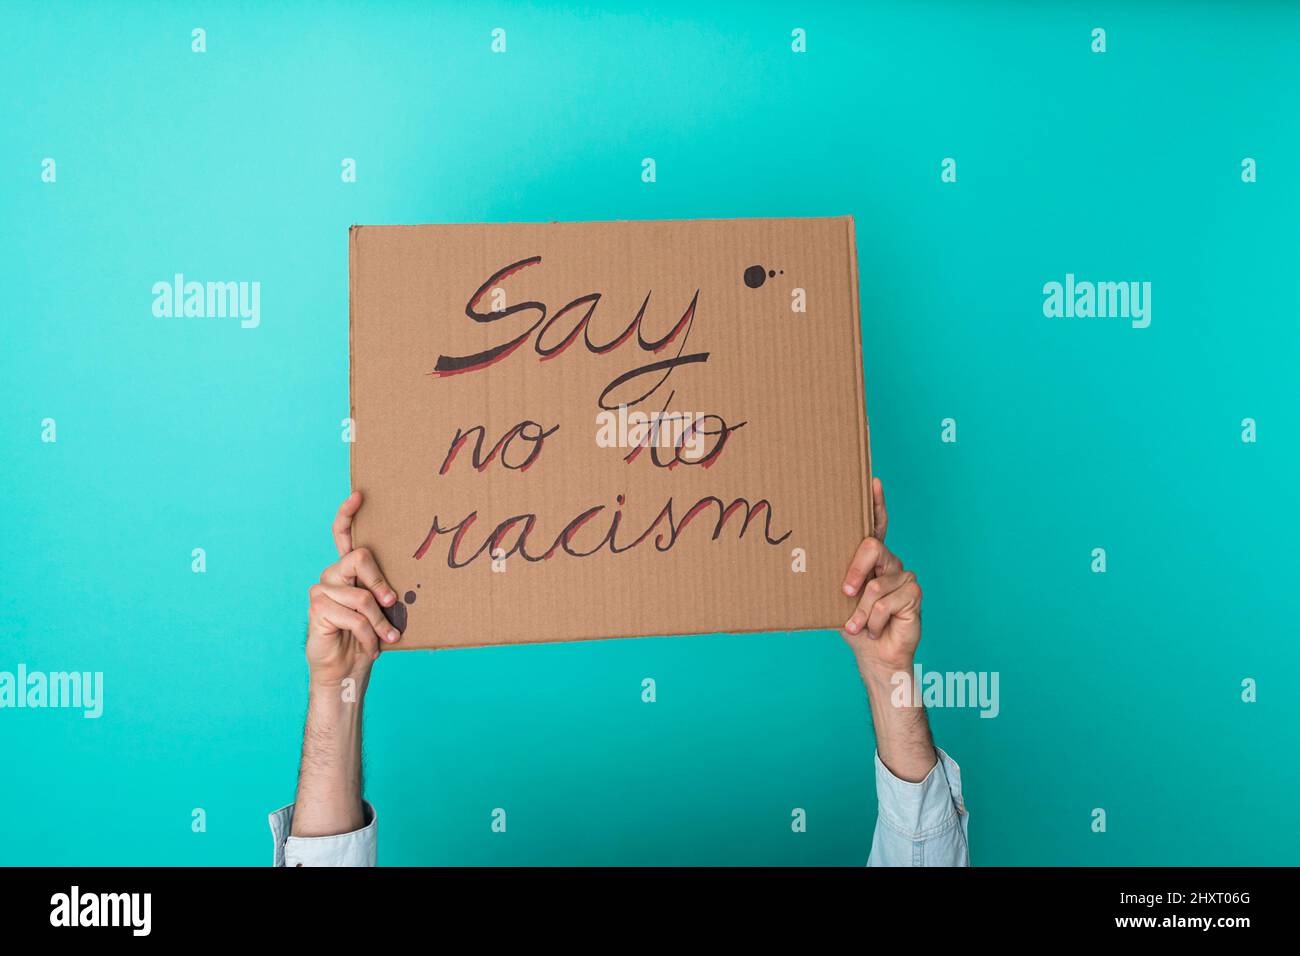 Crop anonyme Person mit Banner gegen Rassismus auf blauem Hintergrund - Gleichberechtigung Konzept Stockfoto